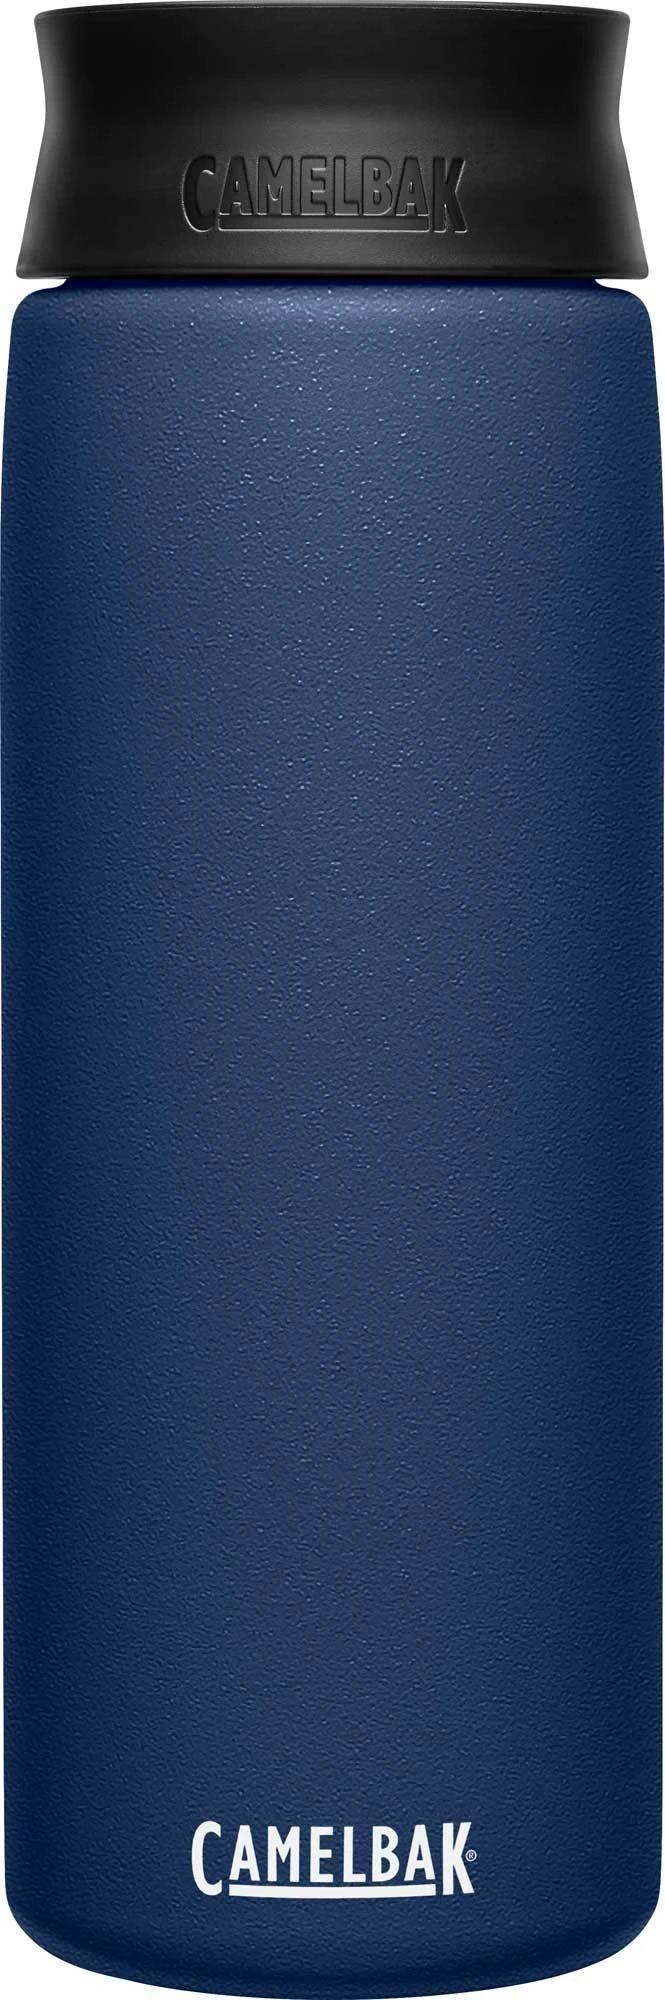 Термокружка CamelBak Hot Cap (0,6 литра), синяя